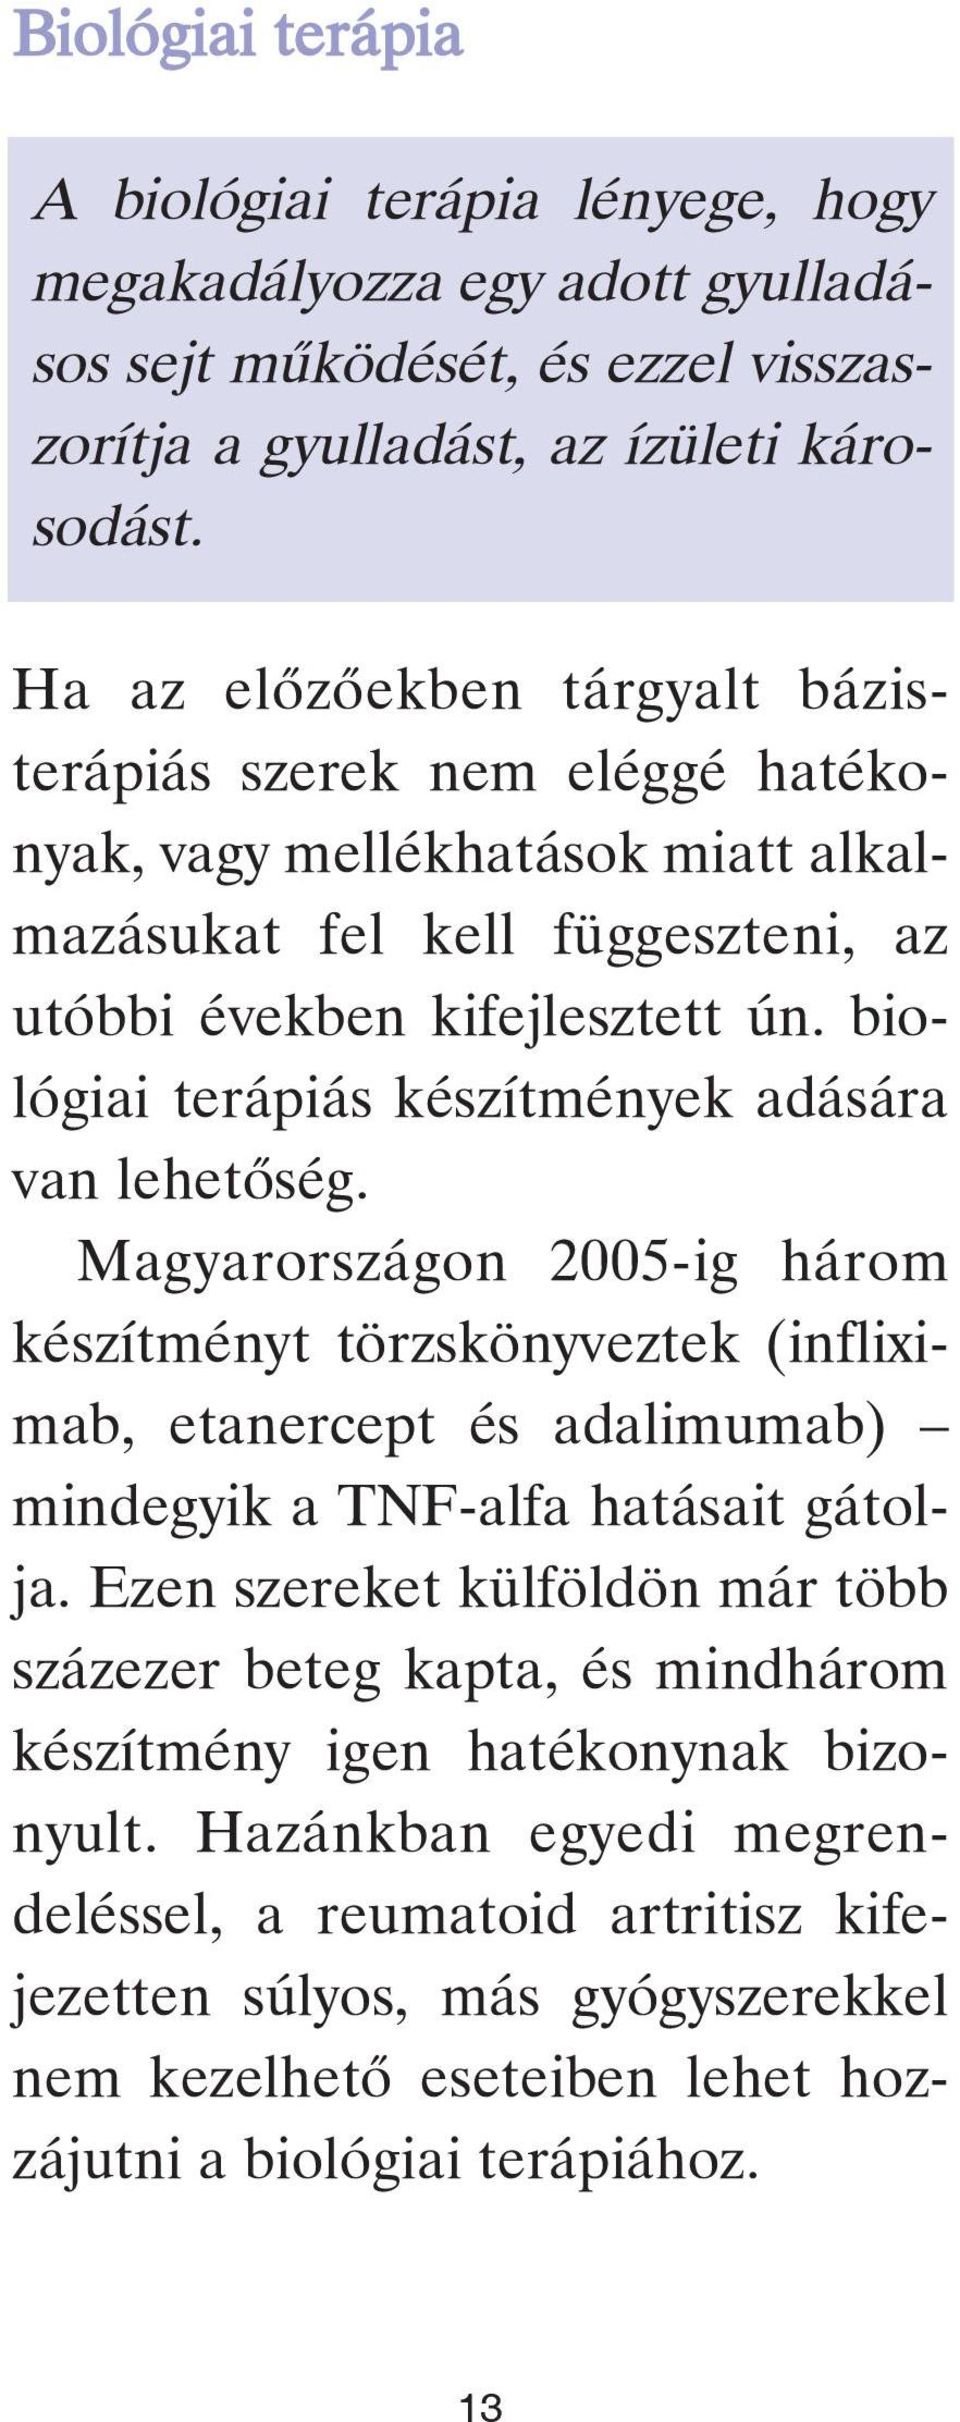 biológiai terápiás készítmények adására van lehetõség. Magyarországon 2005-ig három készítményt törzskönyveztek (infliximab, etanercept és adalimumab) mindegyik a TNF-alfa hatásait gátolja.